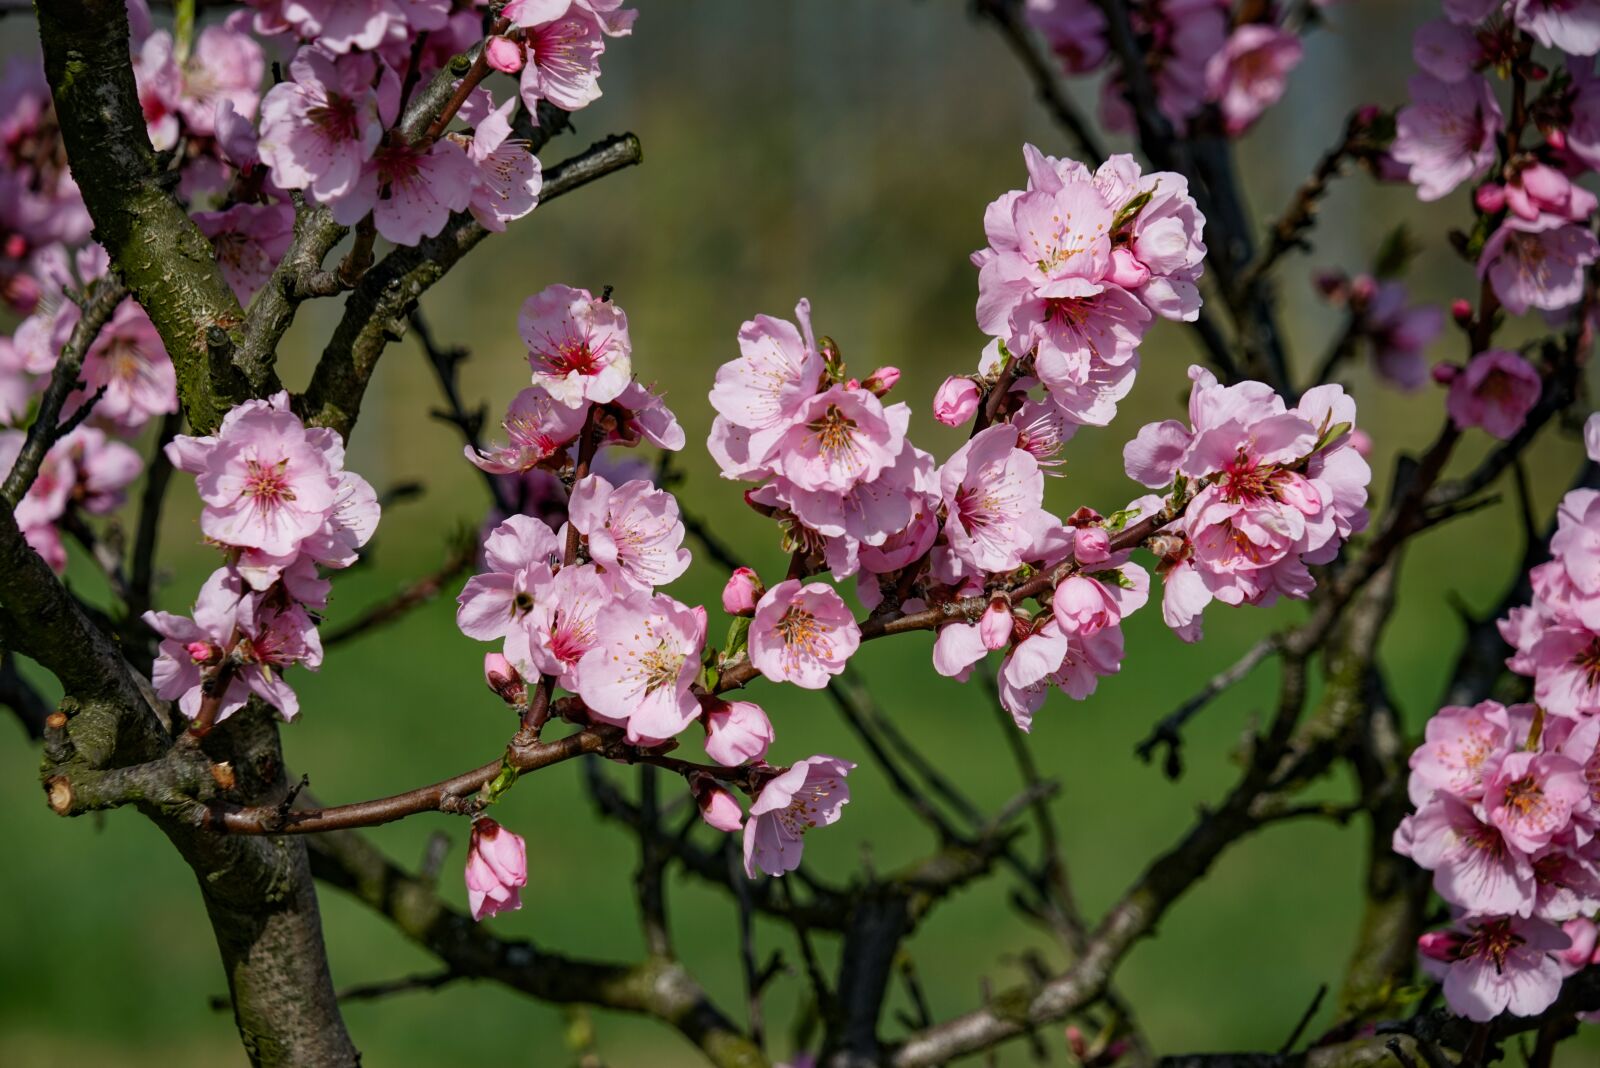 Sony a7R sample photo. Almond blossom, almond blossom photography